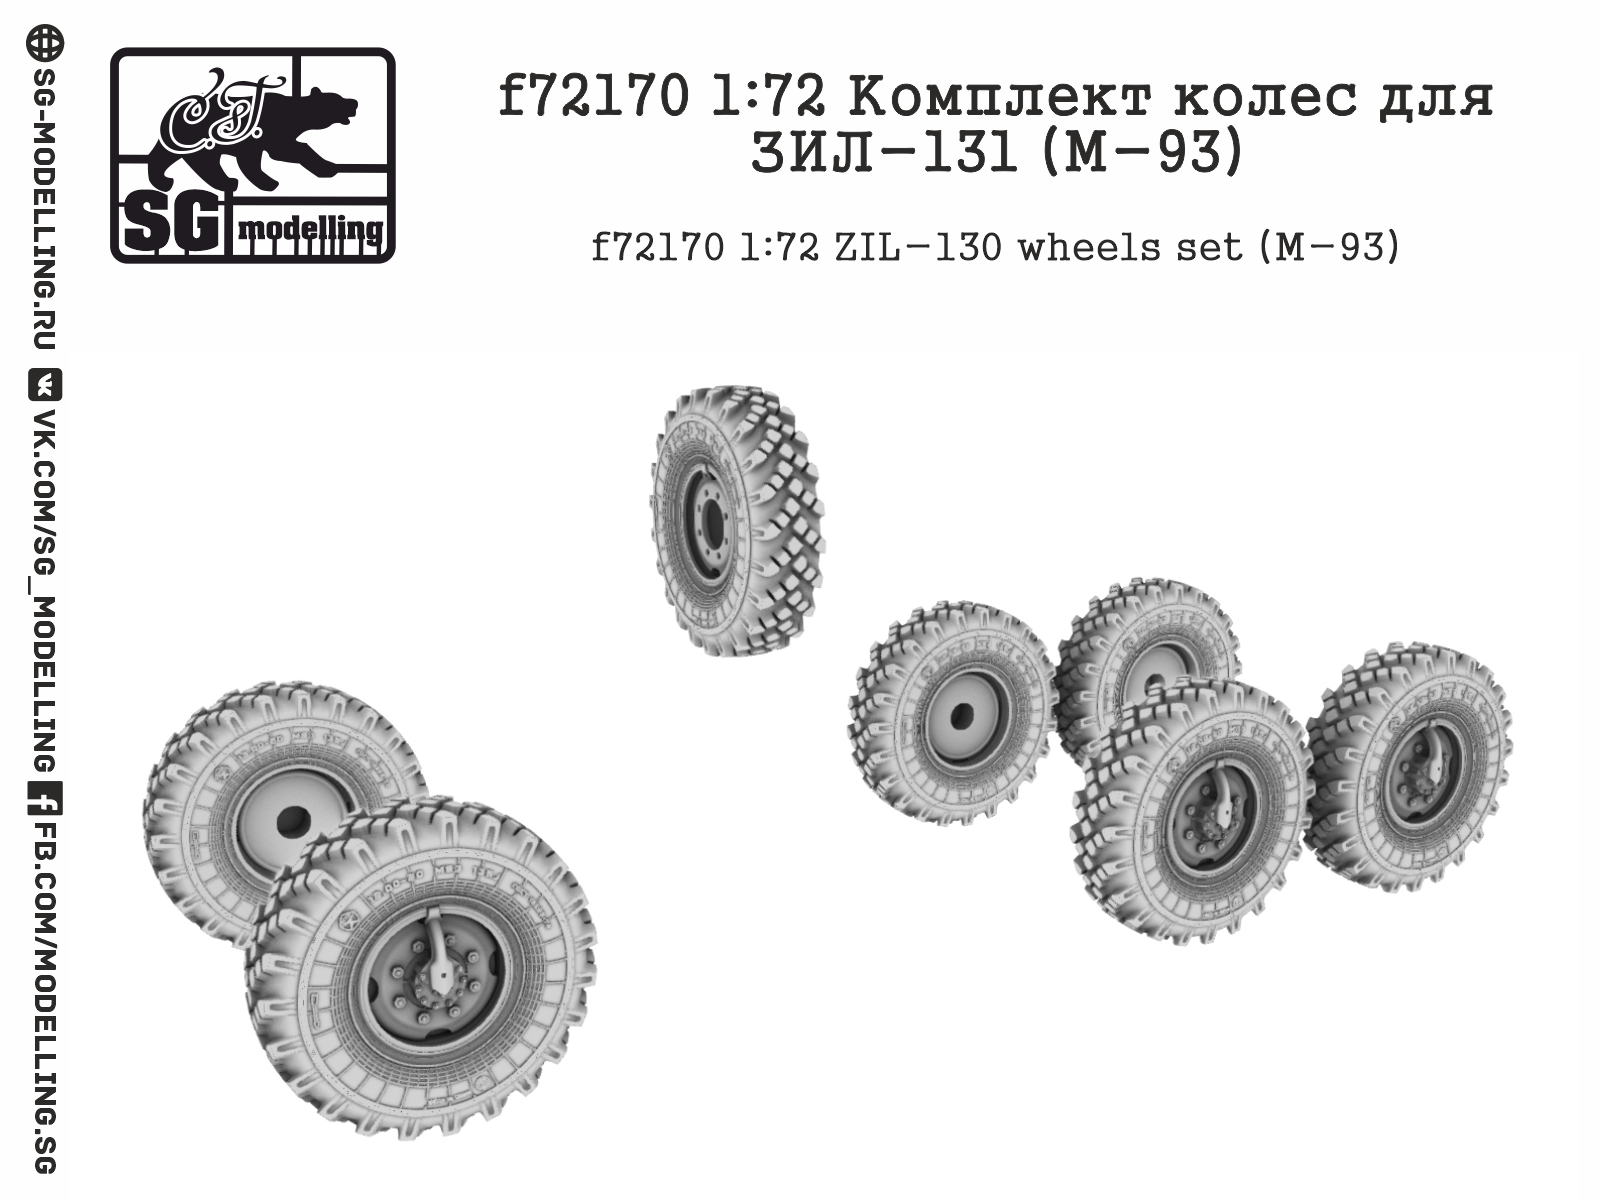 ZIL-131 (M-93) wheels